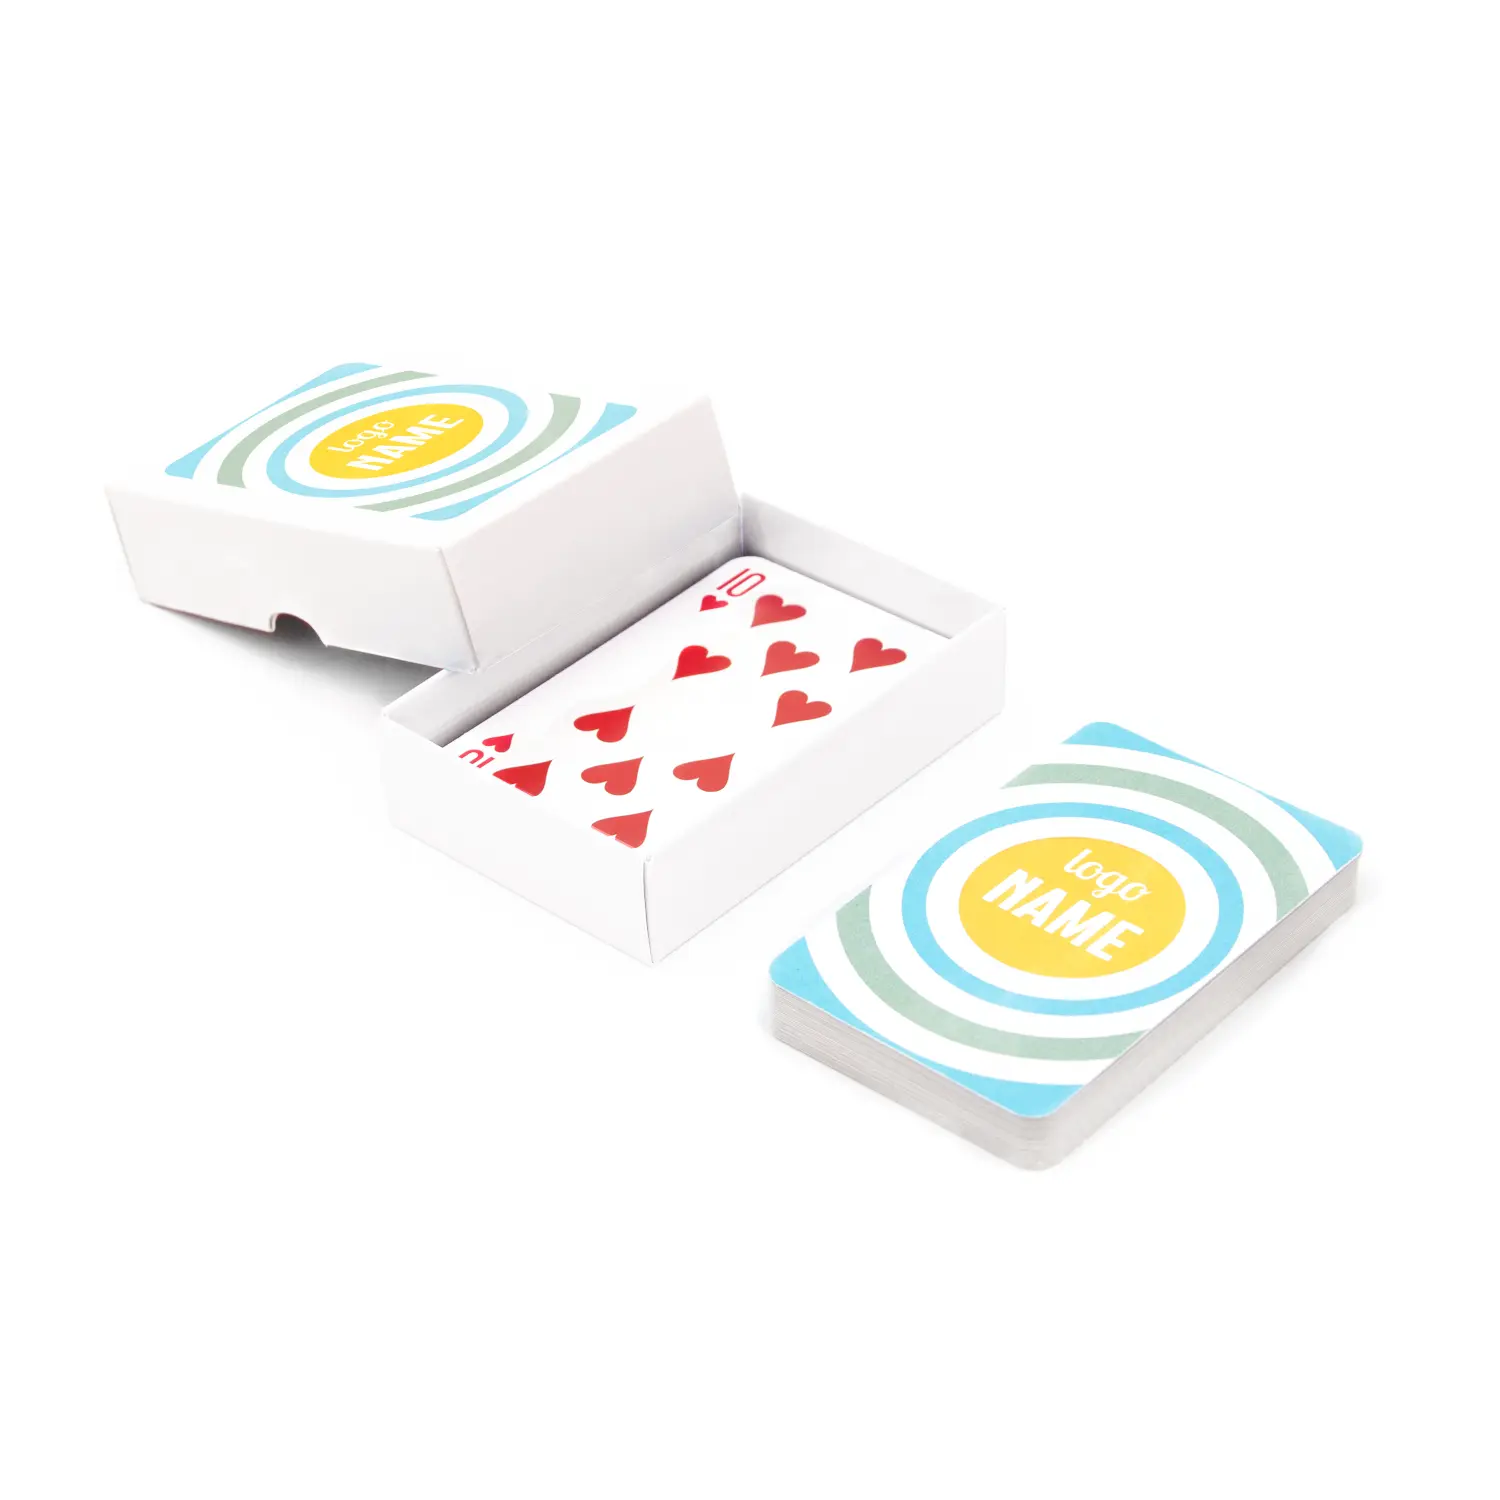 Speelkaarten set in wit doosje